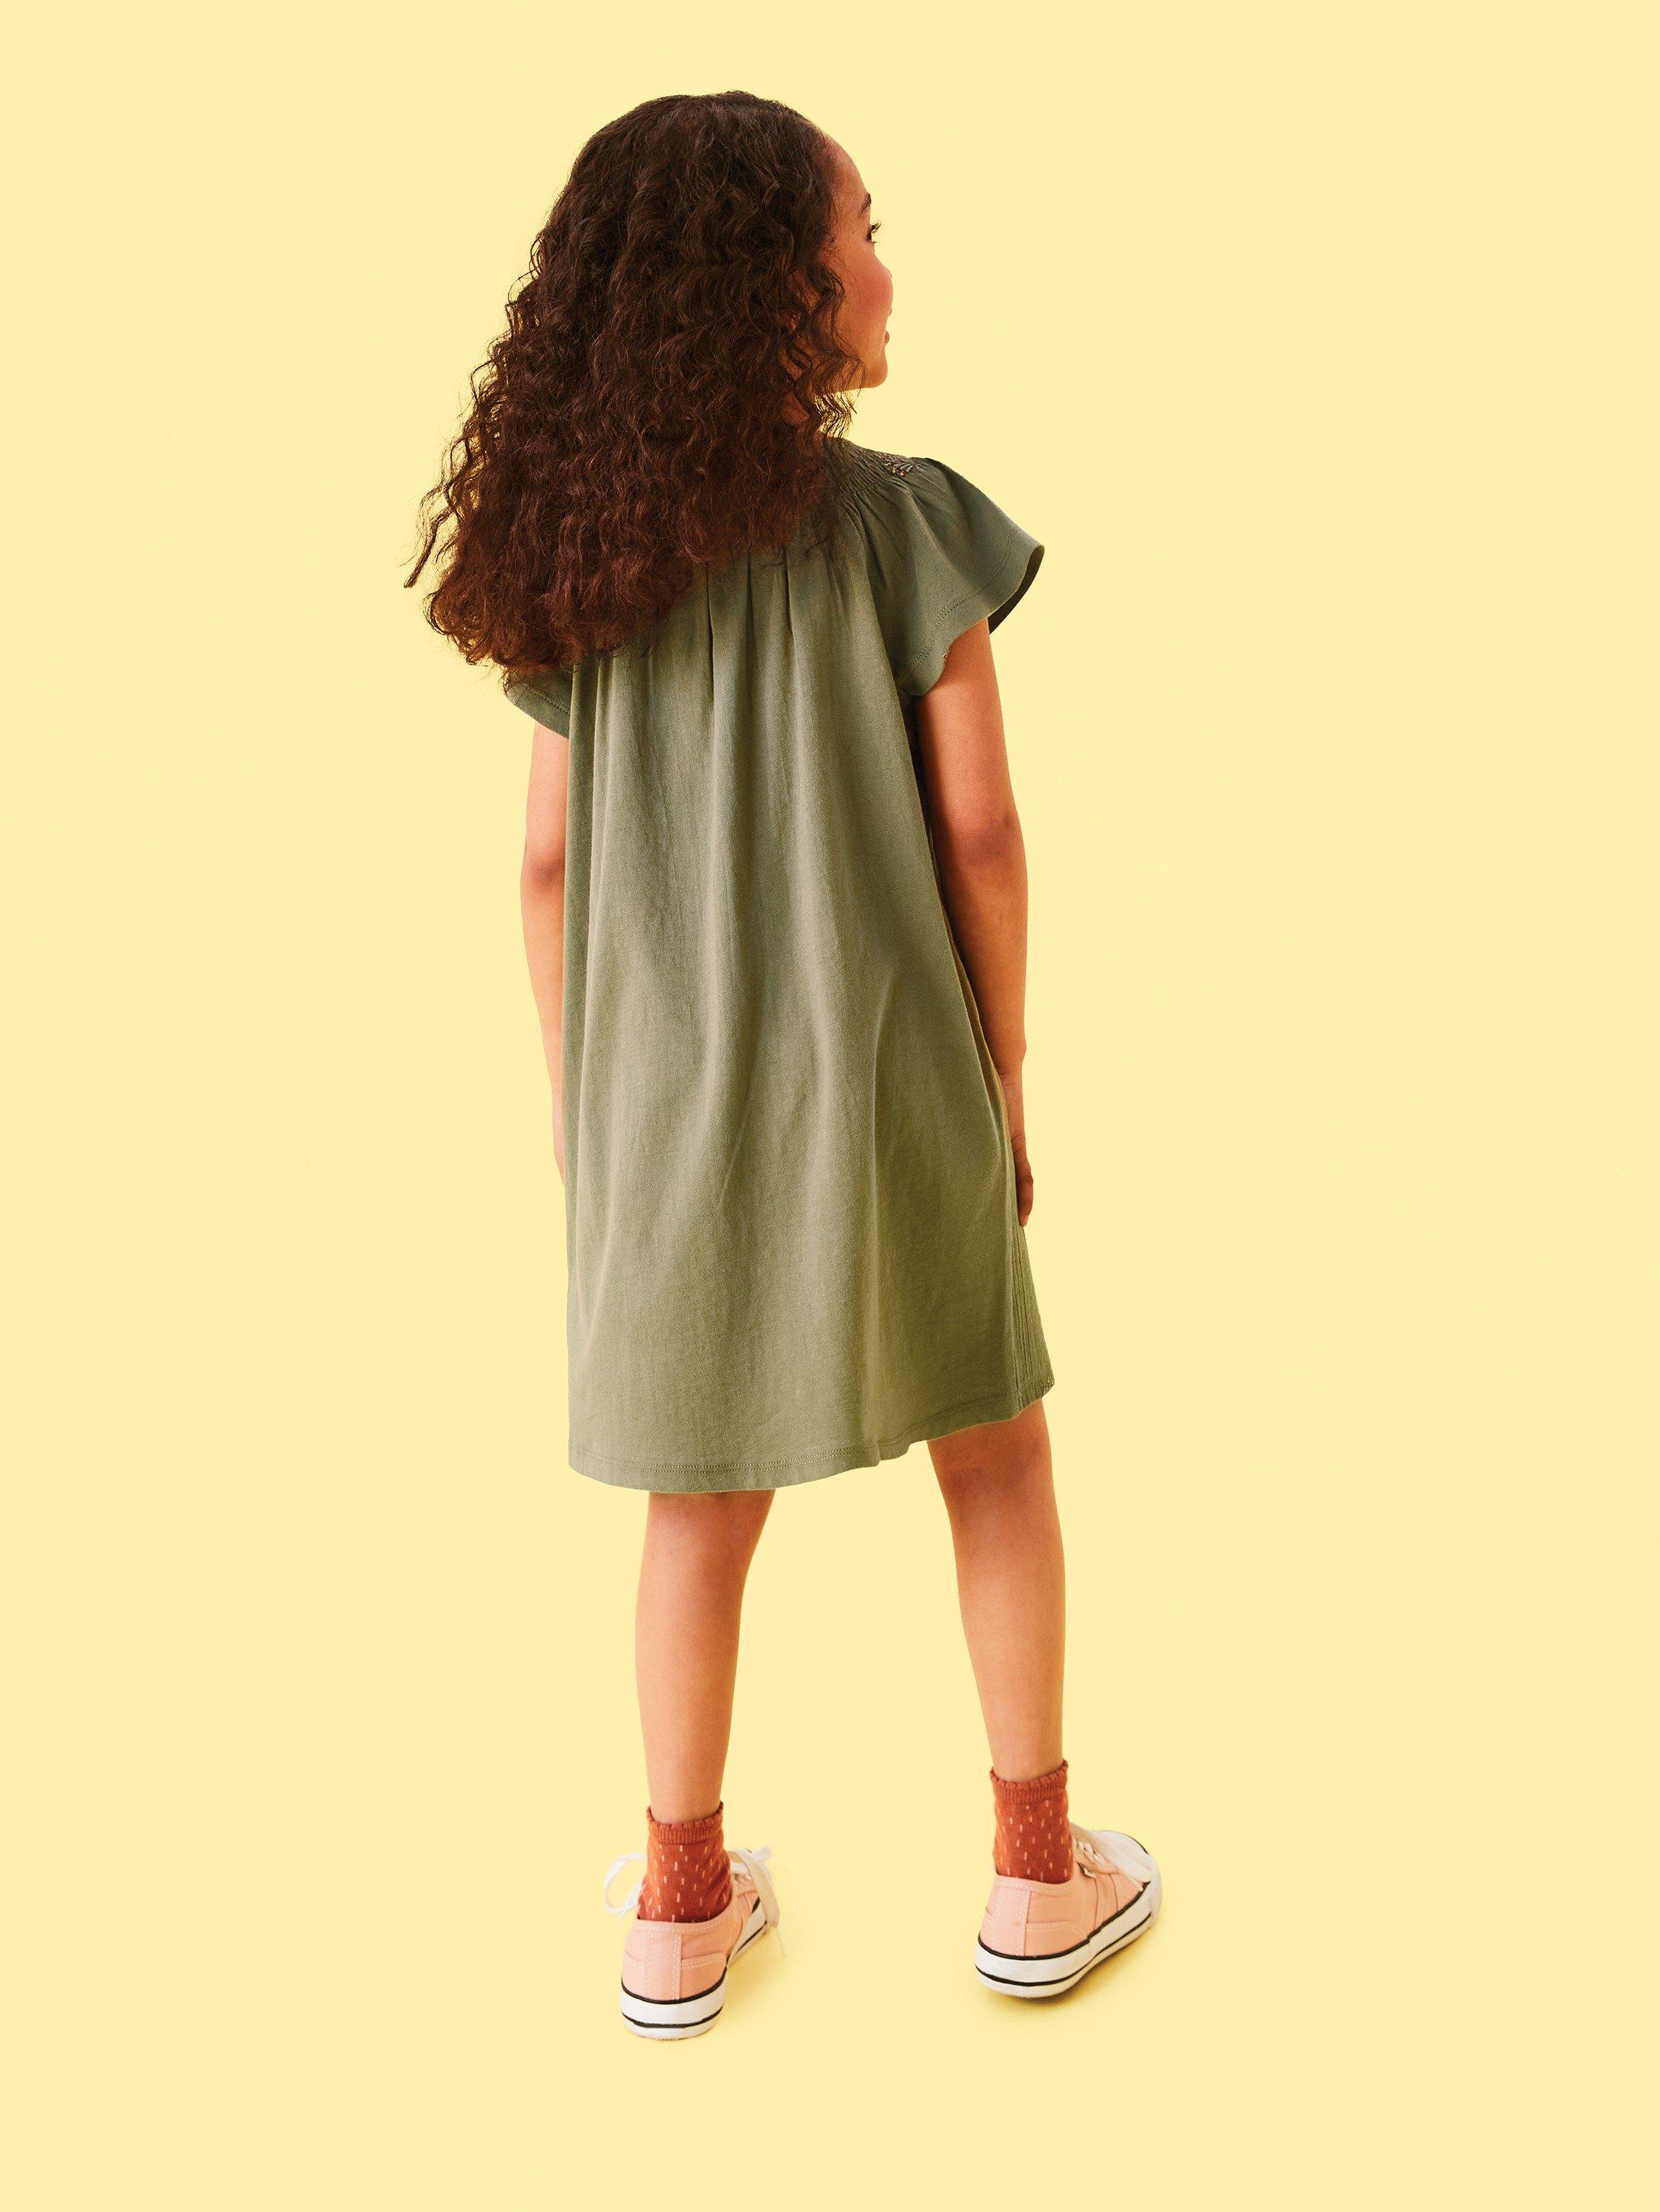 Lolly Dress in MID GREEN - MODEL BACK